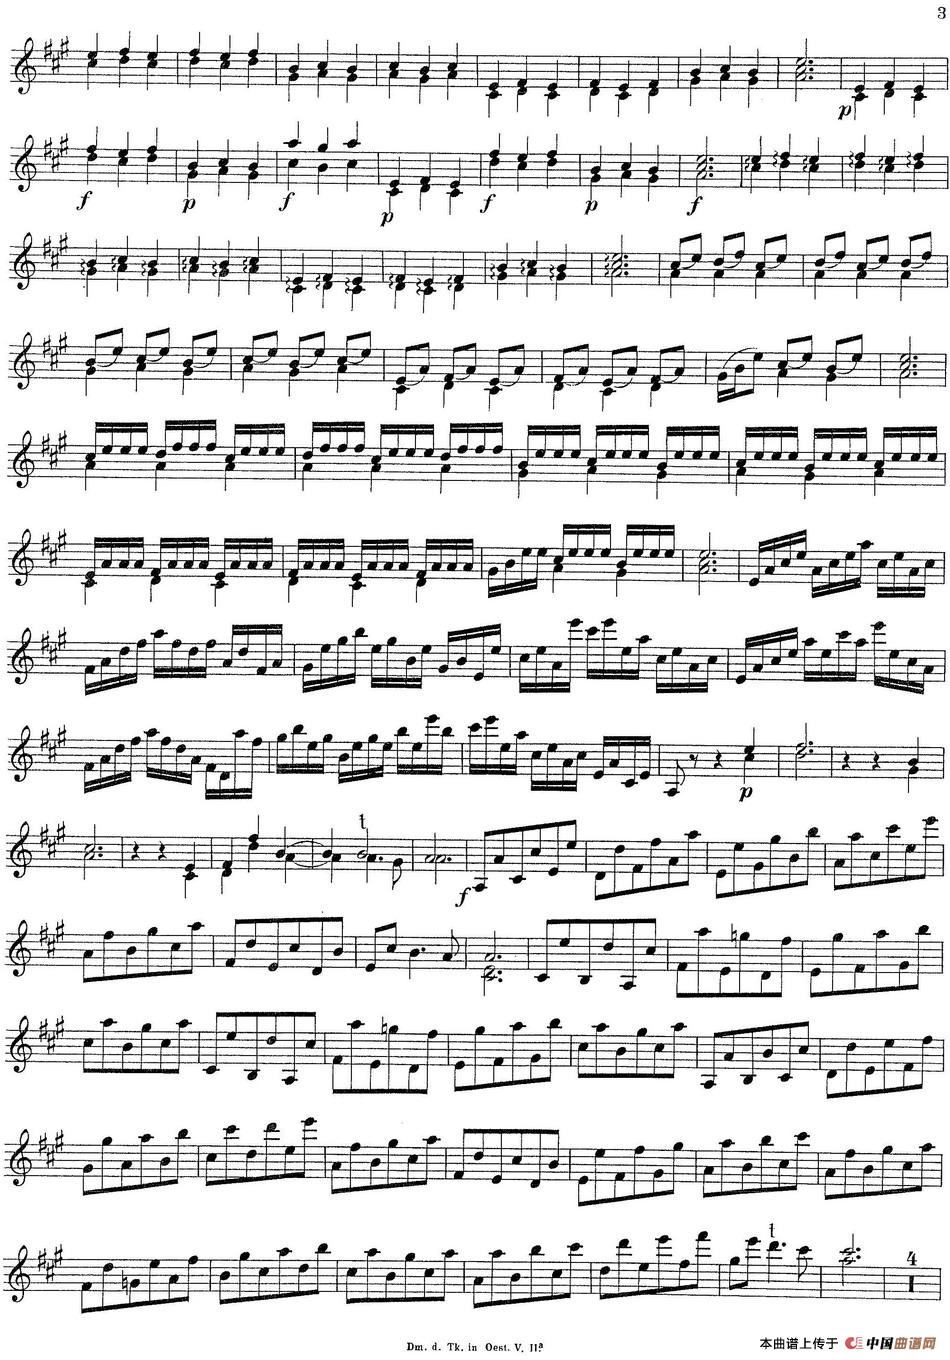 Biber Violin Sonata I